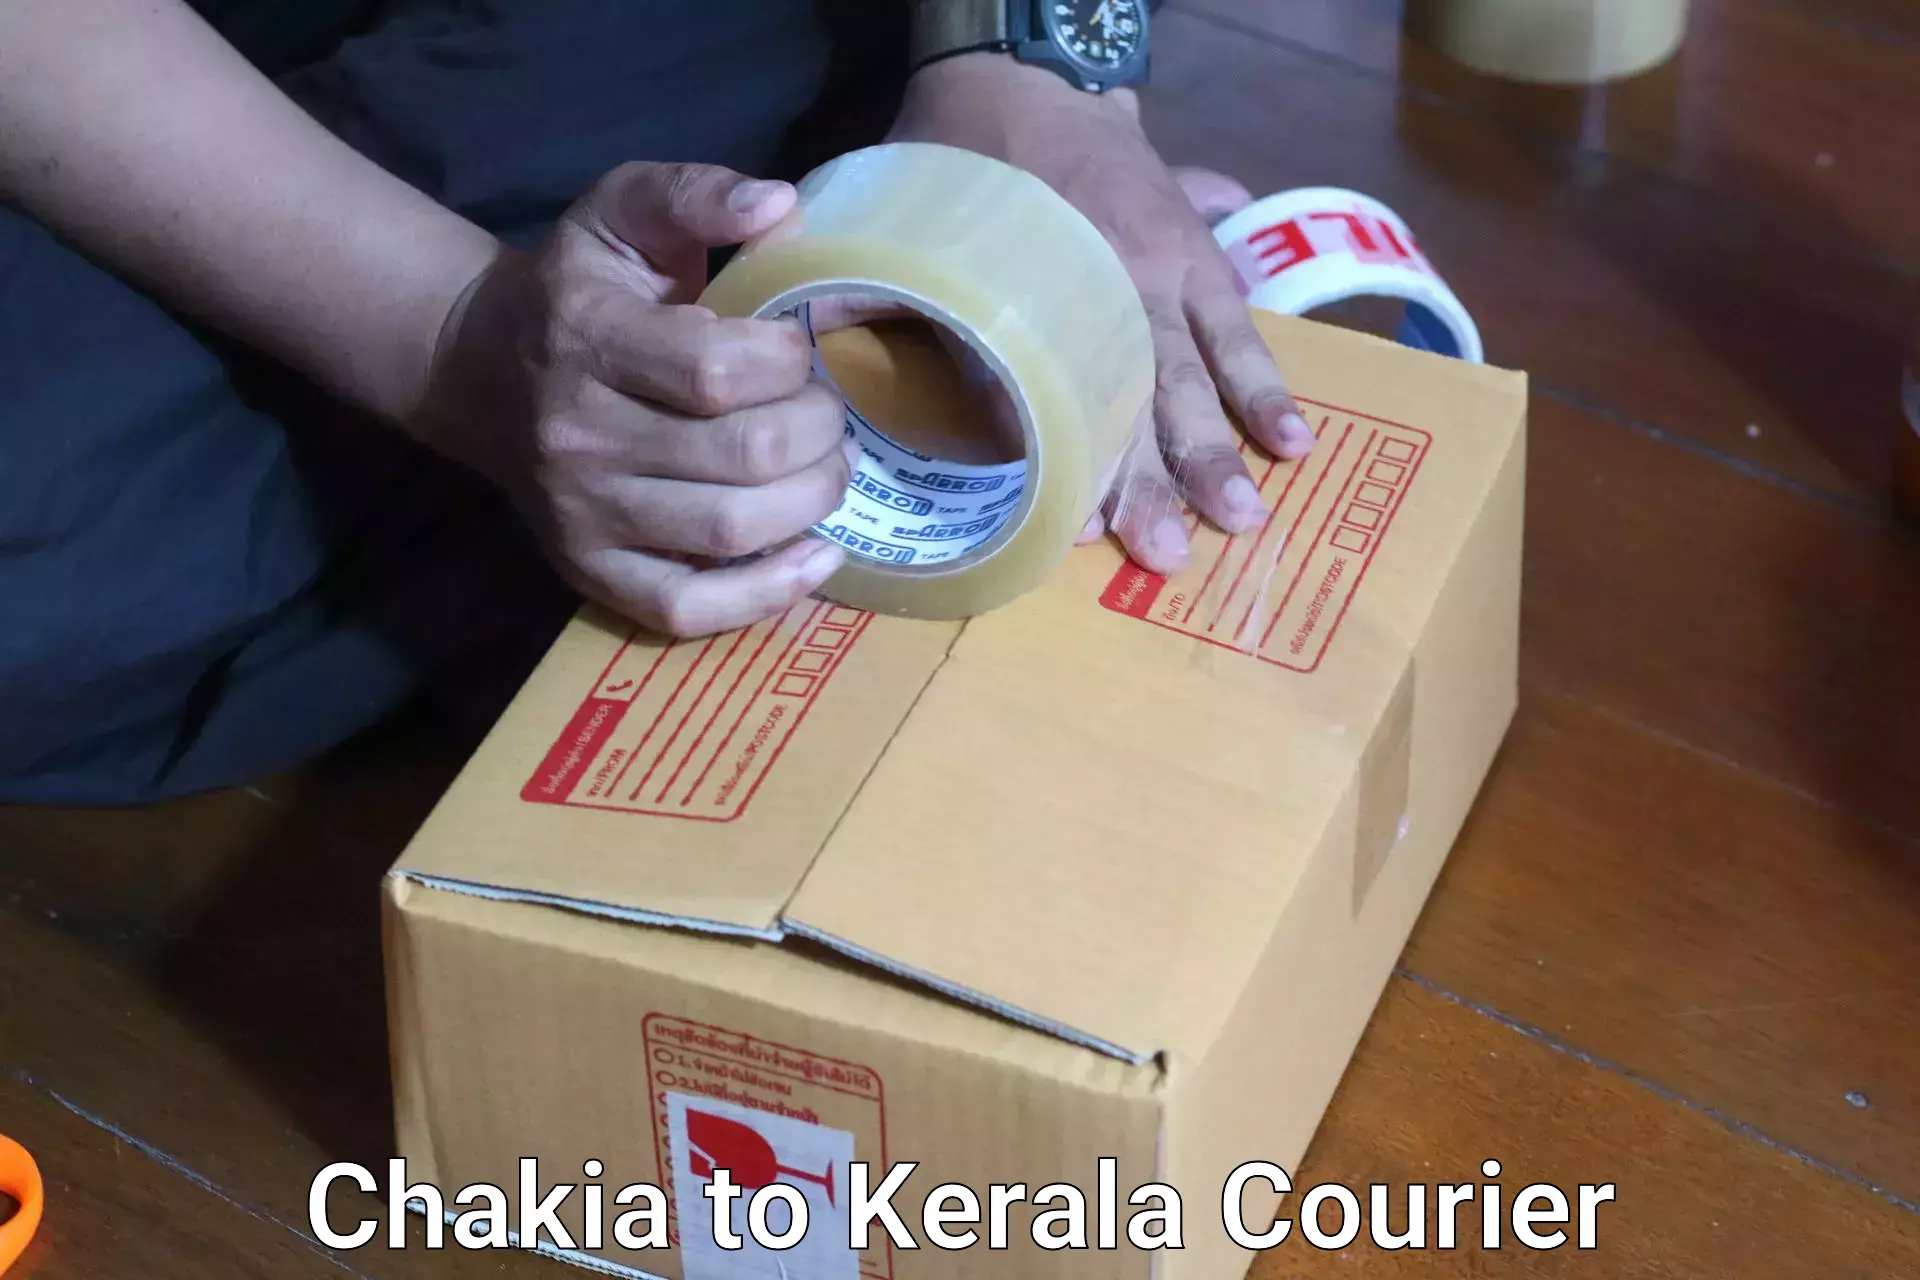 Baggage relocation service Chakia to Cochin Port Kochi